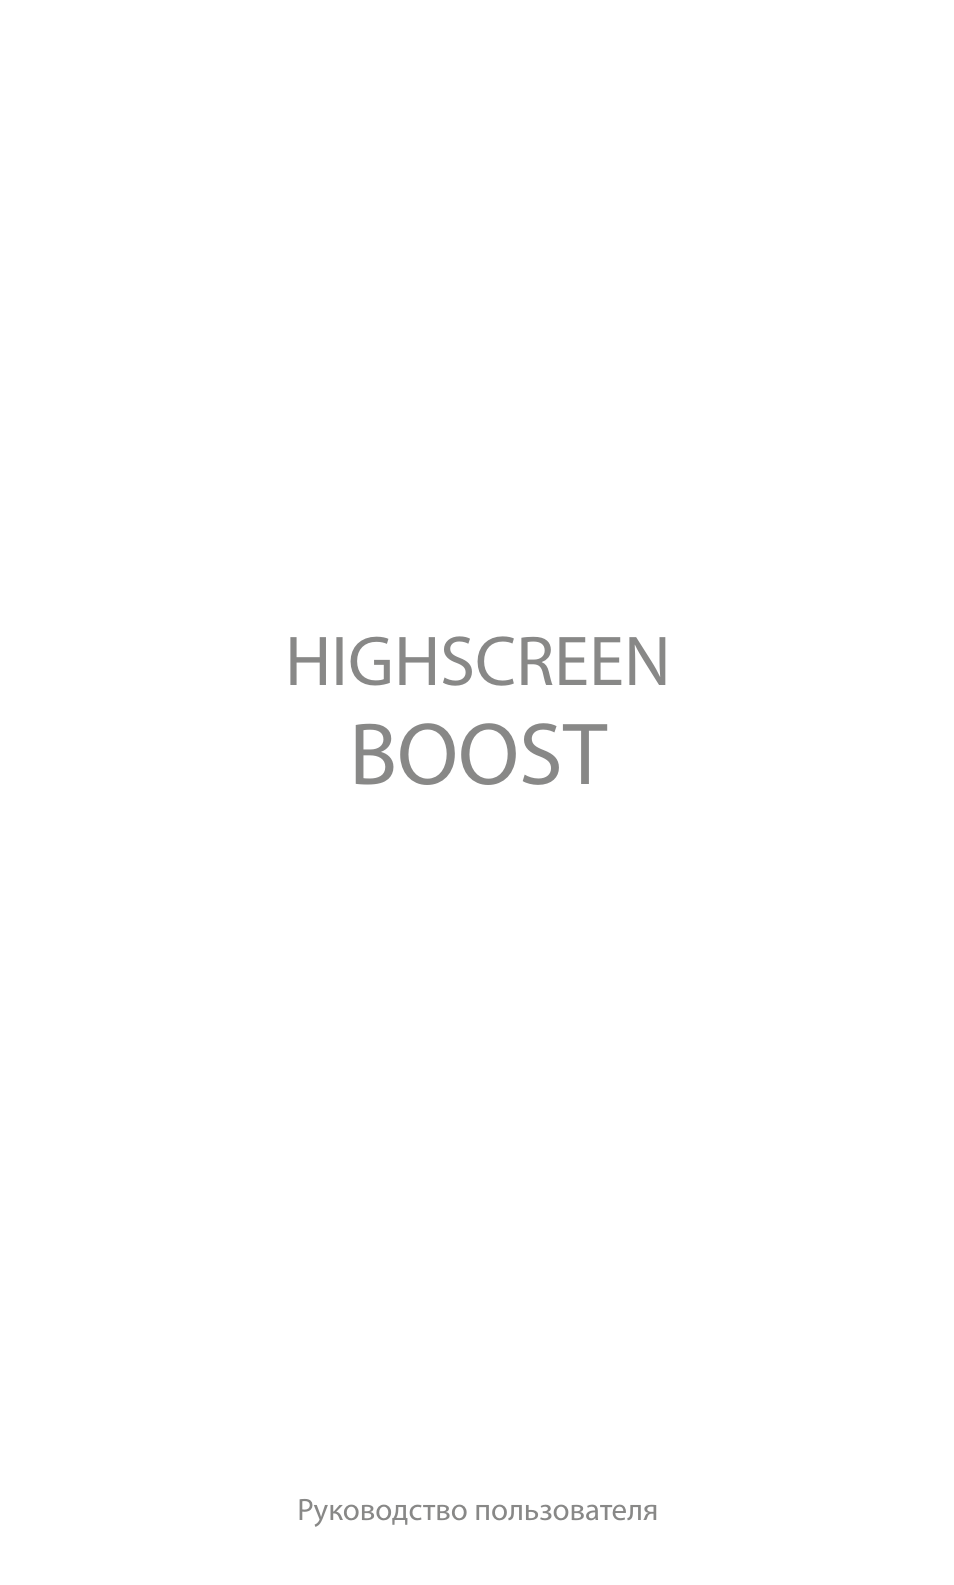 Инструкция по эксплуатации Highscreen Boost | 30 страниц